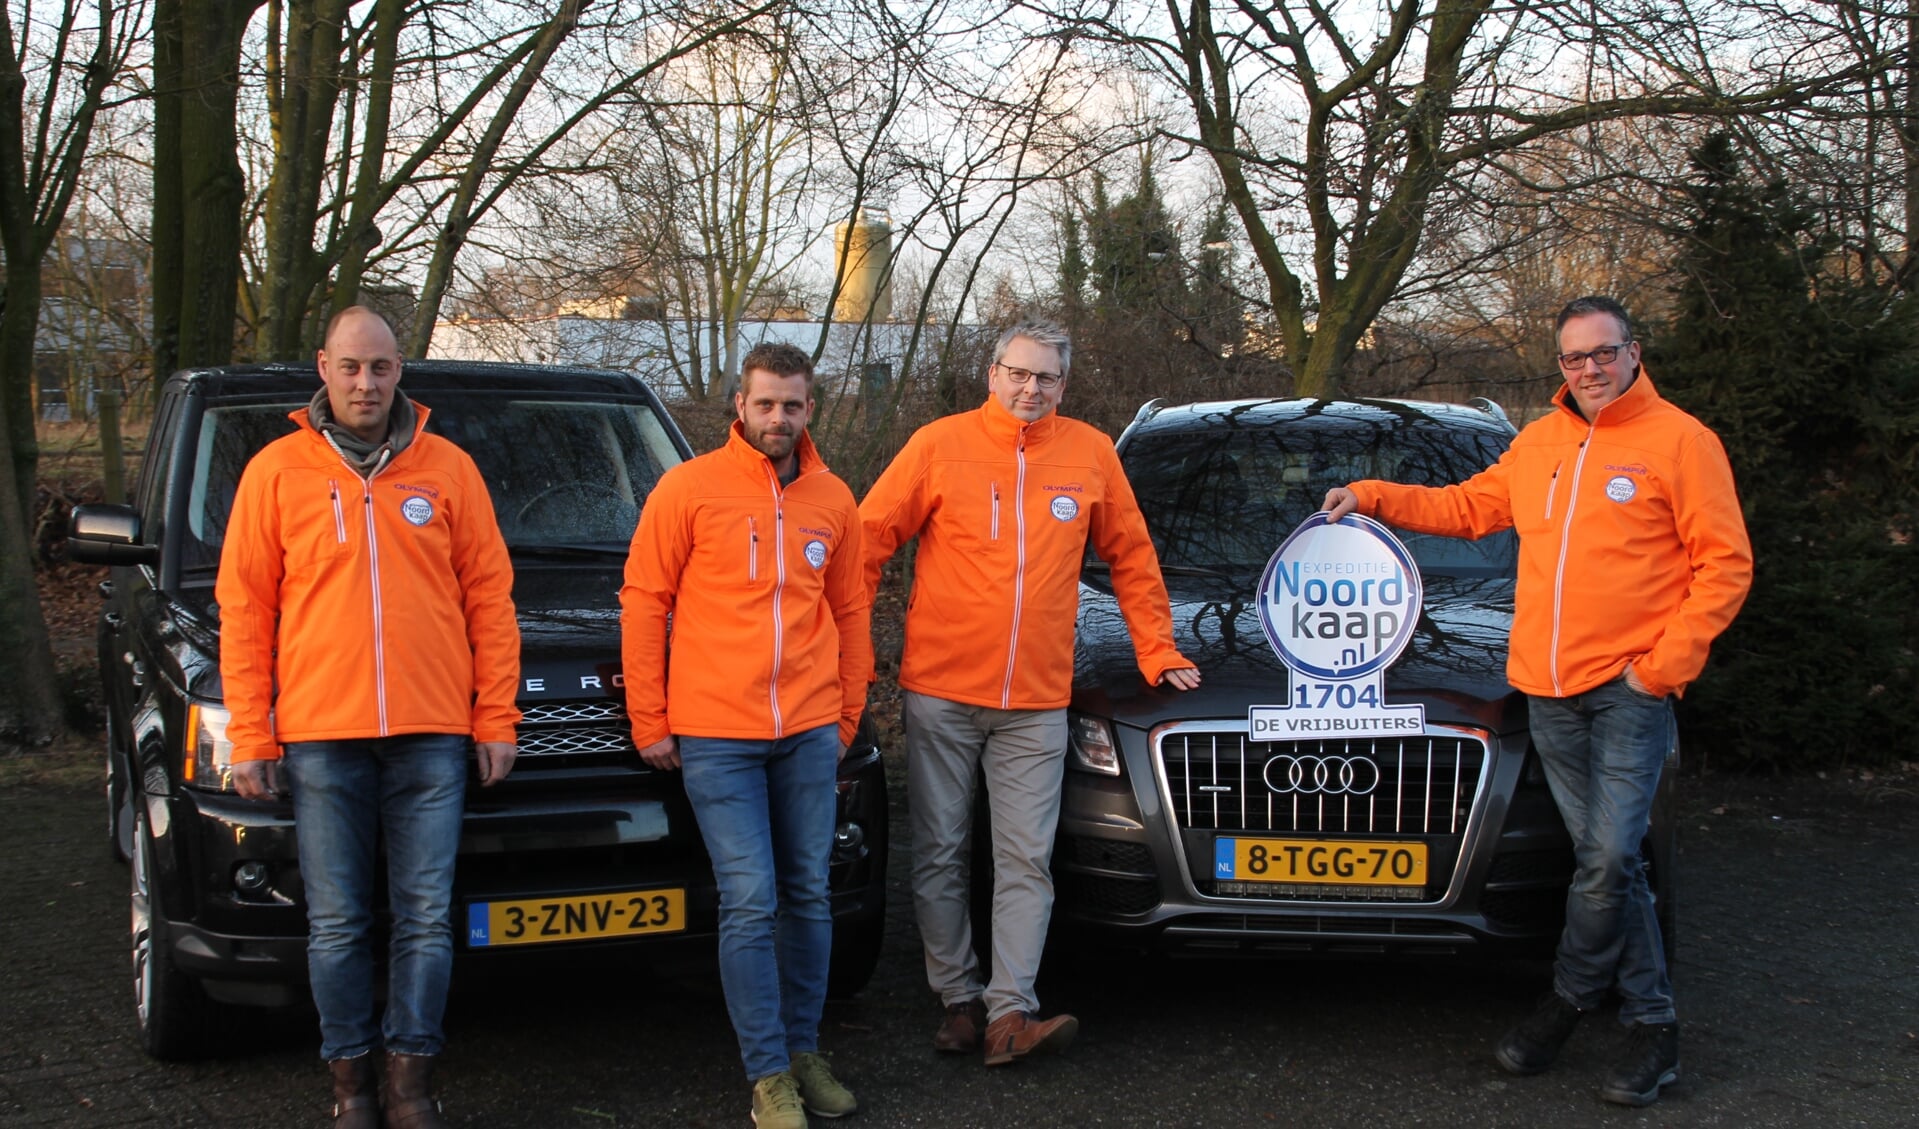 Patrick van Dijck uit Uden, Ton van Zoggel uit Schijndel, Frans van Outvorst uit Boekel en Triny van Rooij uit Veghel vertrekken op 29 januari.